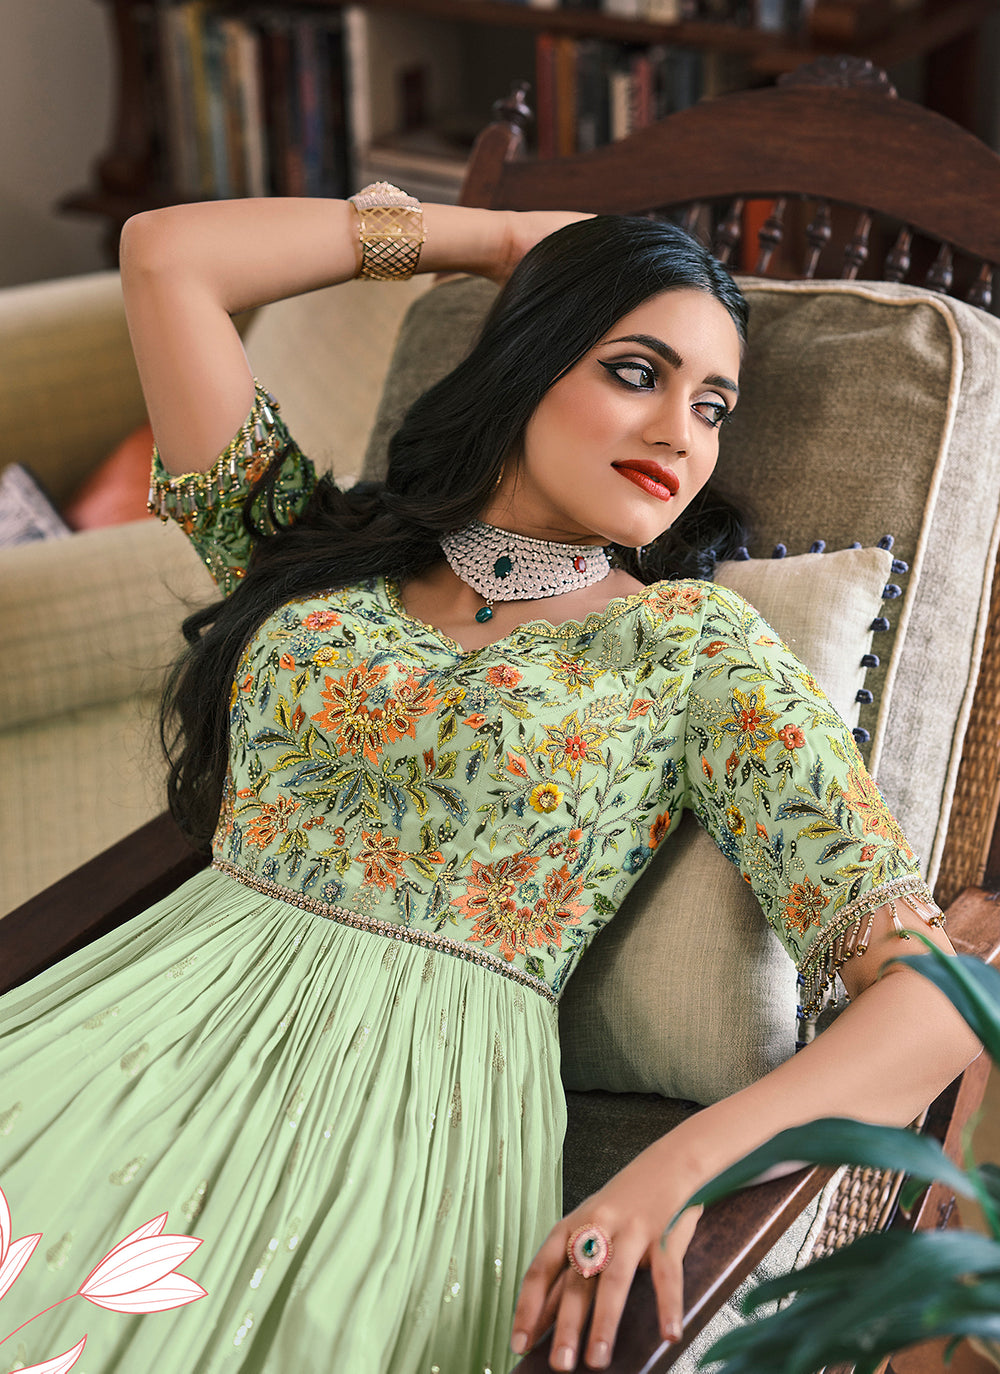 Buy Pastel Green Designer Motifs Embellished Anarkali - Anarkali Suit